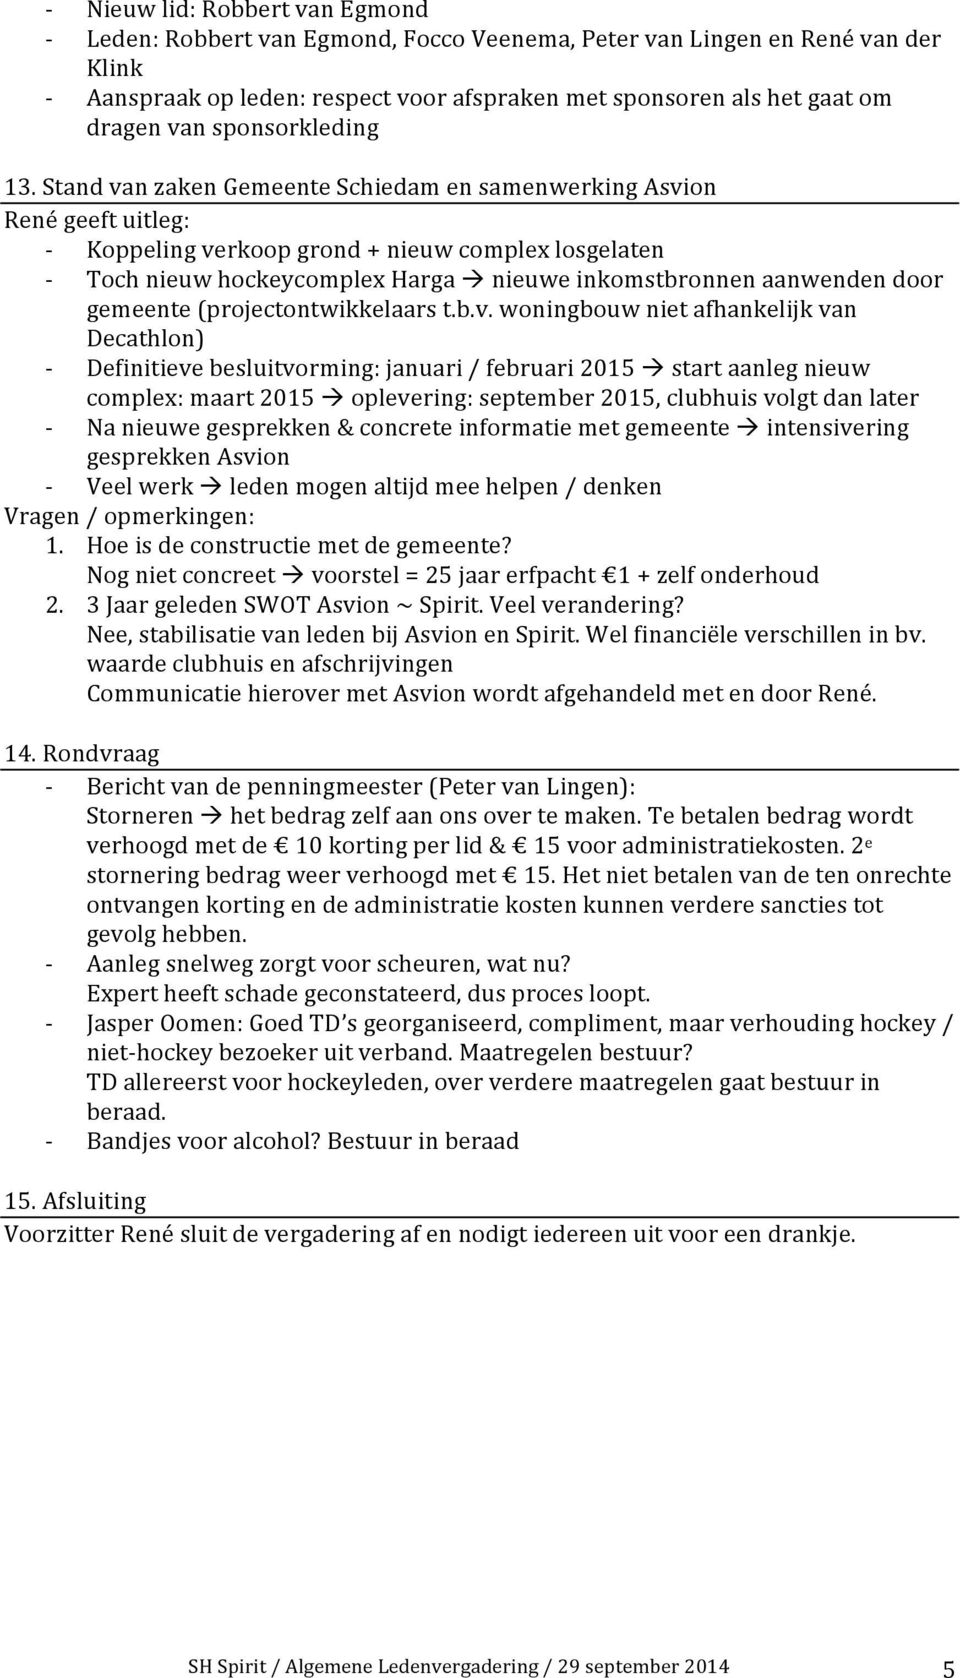 Stand van zaken Gemeente Schiedam en samenwerking Asvion René geeft uitleg: Koppeling verkoop grond + nieuw complex losgelaten Toch nieuw hockeycomplex Harga à nieuwe inkomstbronnen aanwenden door